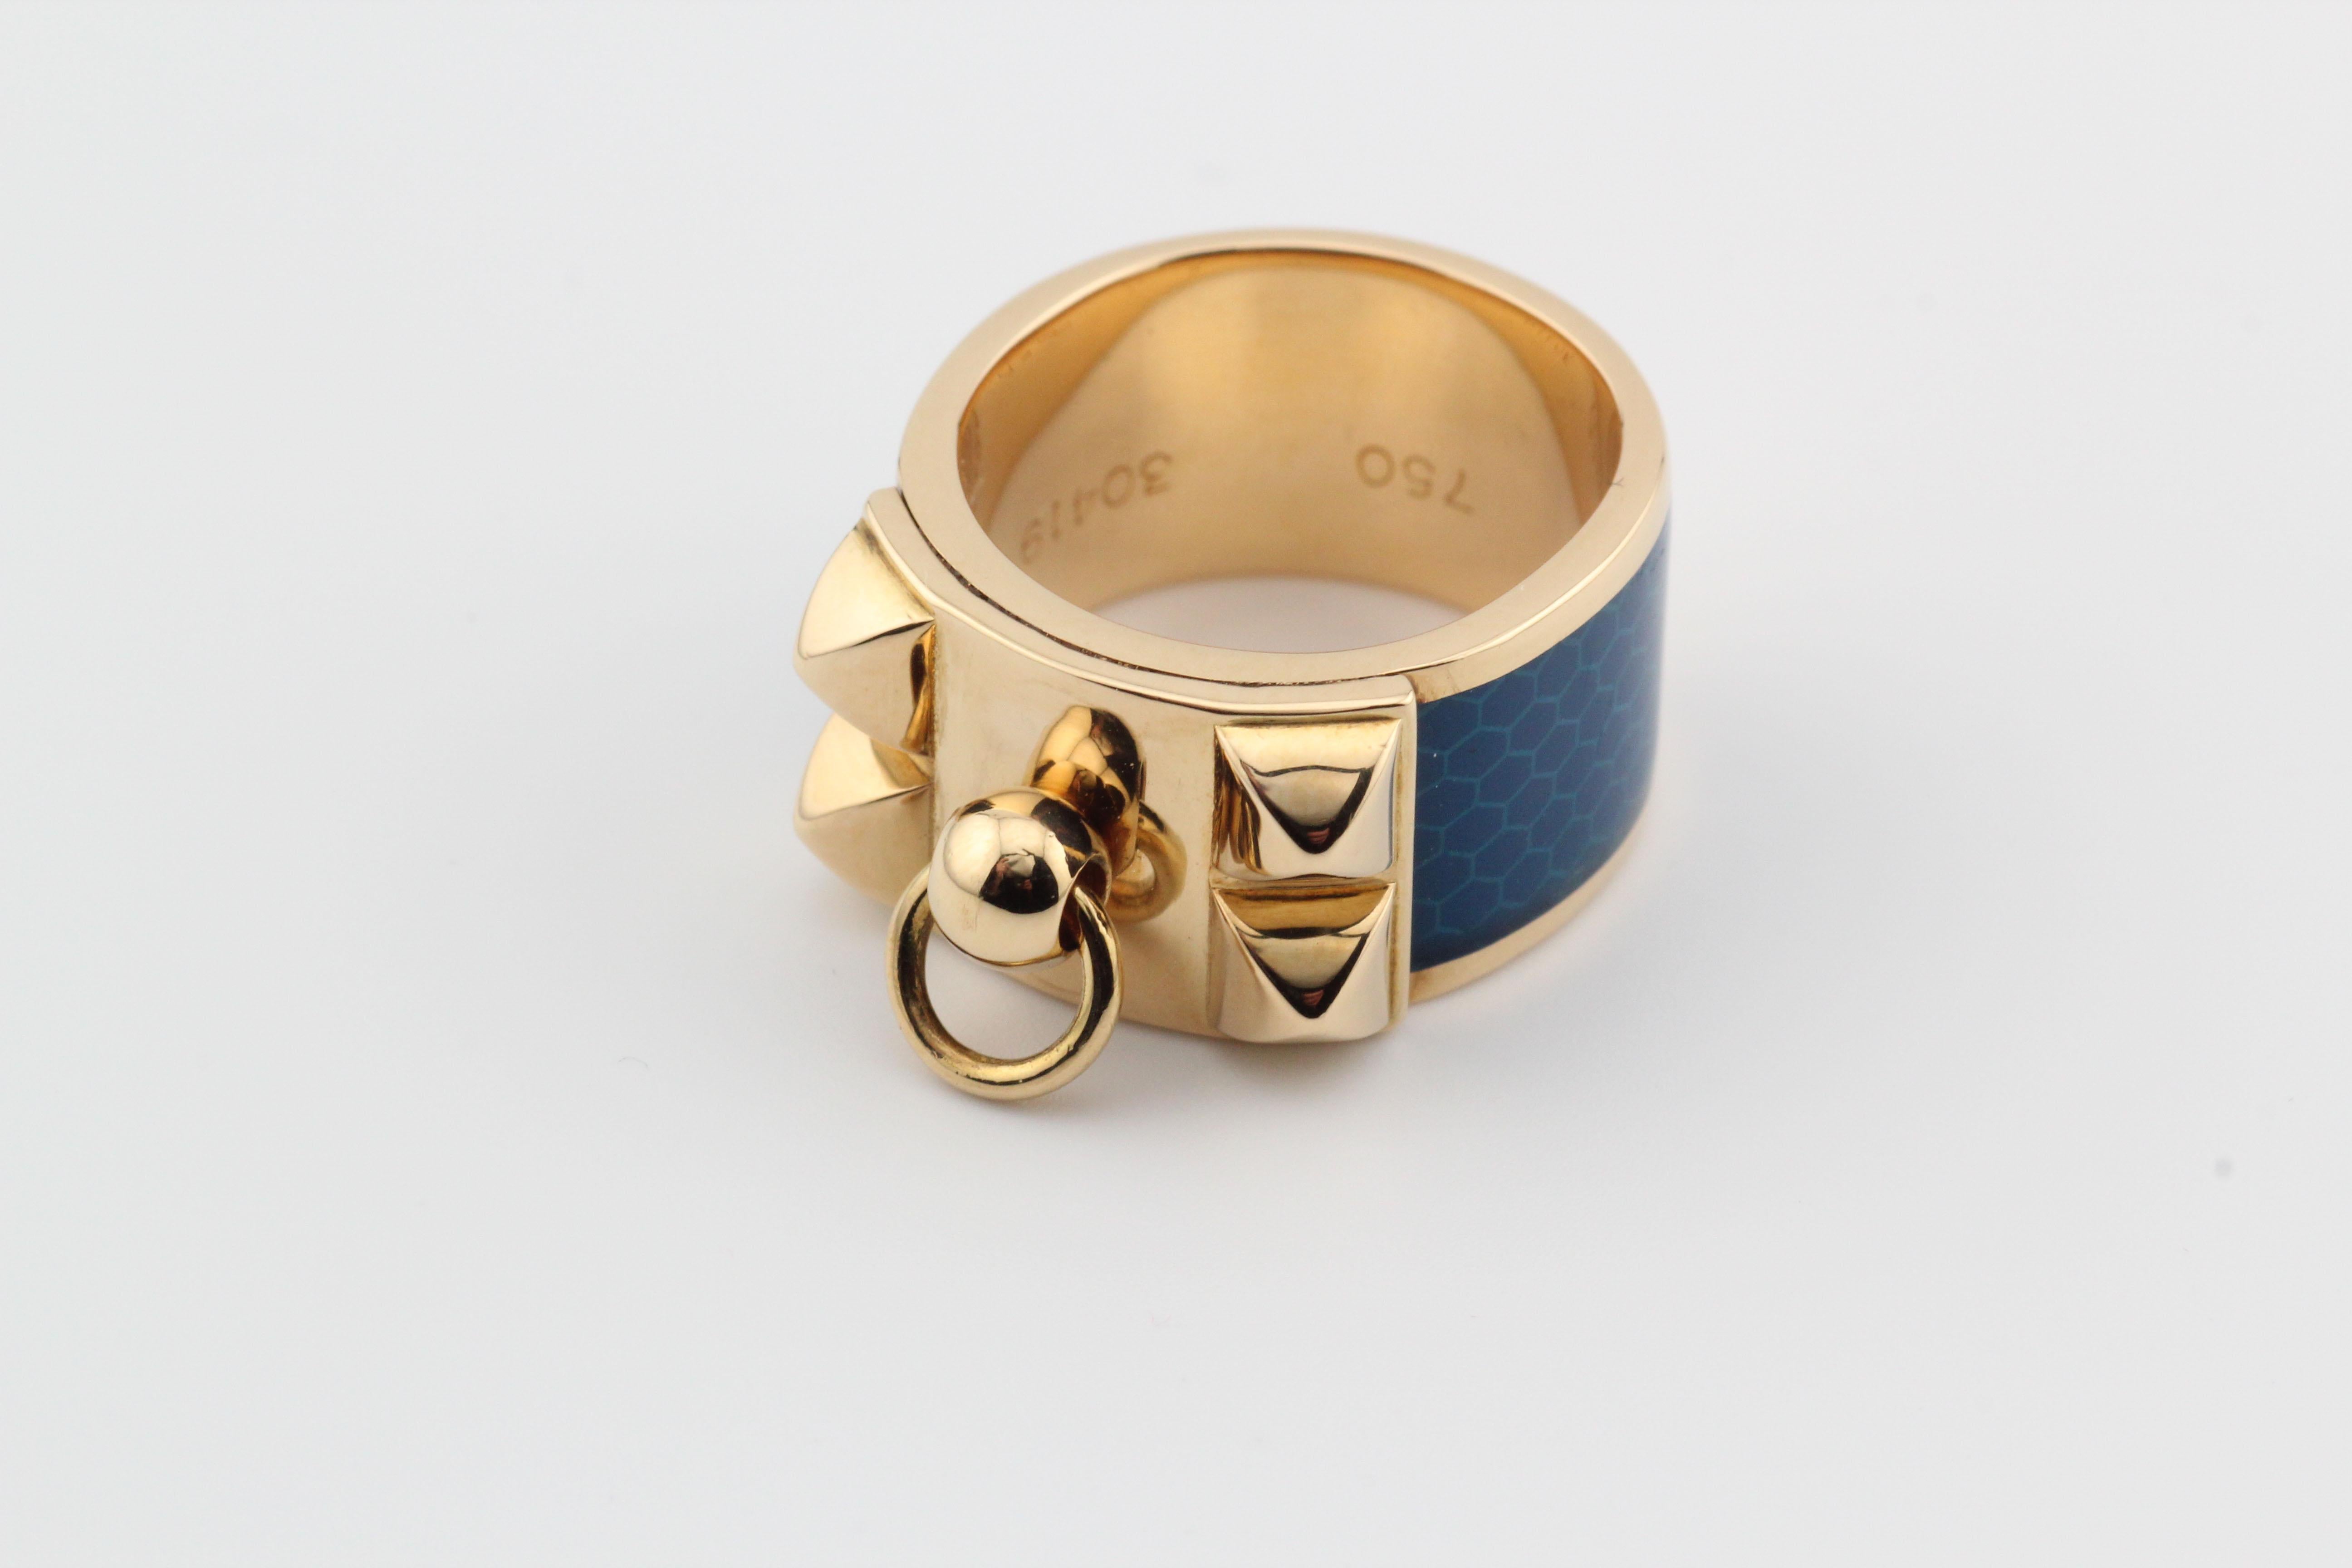 Der Ring Collier de Chien von Hermes ist ein exquisites Schmuckstück, das sowohl luxuriös als auch elegant ist. Der Ring hat ein wunderschönes und einzigartiges Design, das sofort als Hermes erkennbar ist.  

Der aus hochwertigem 18-karätigem Gold